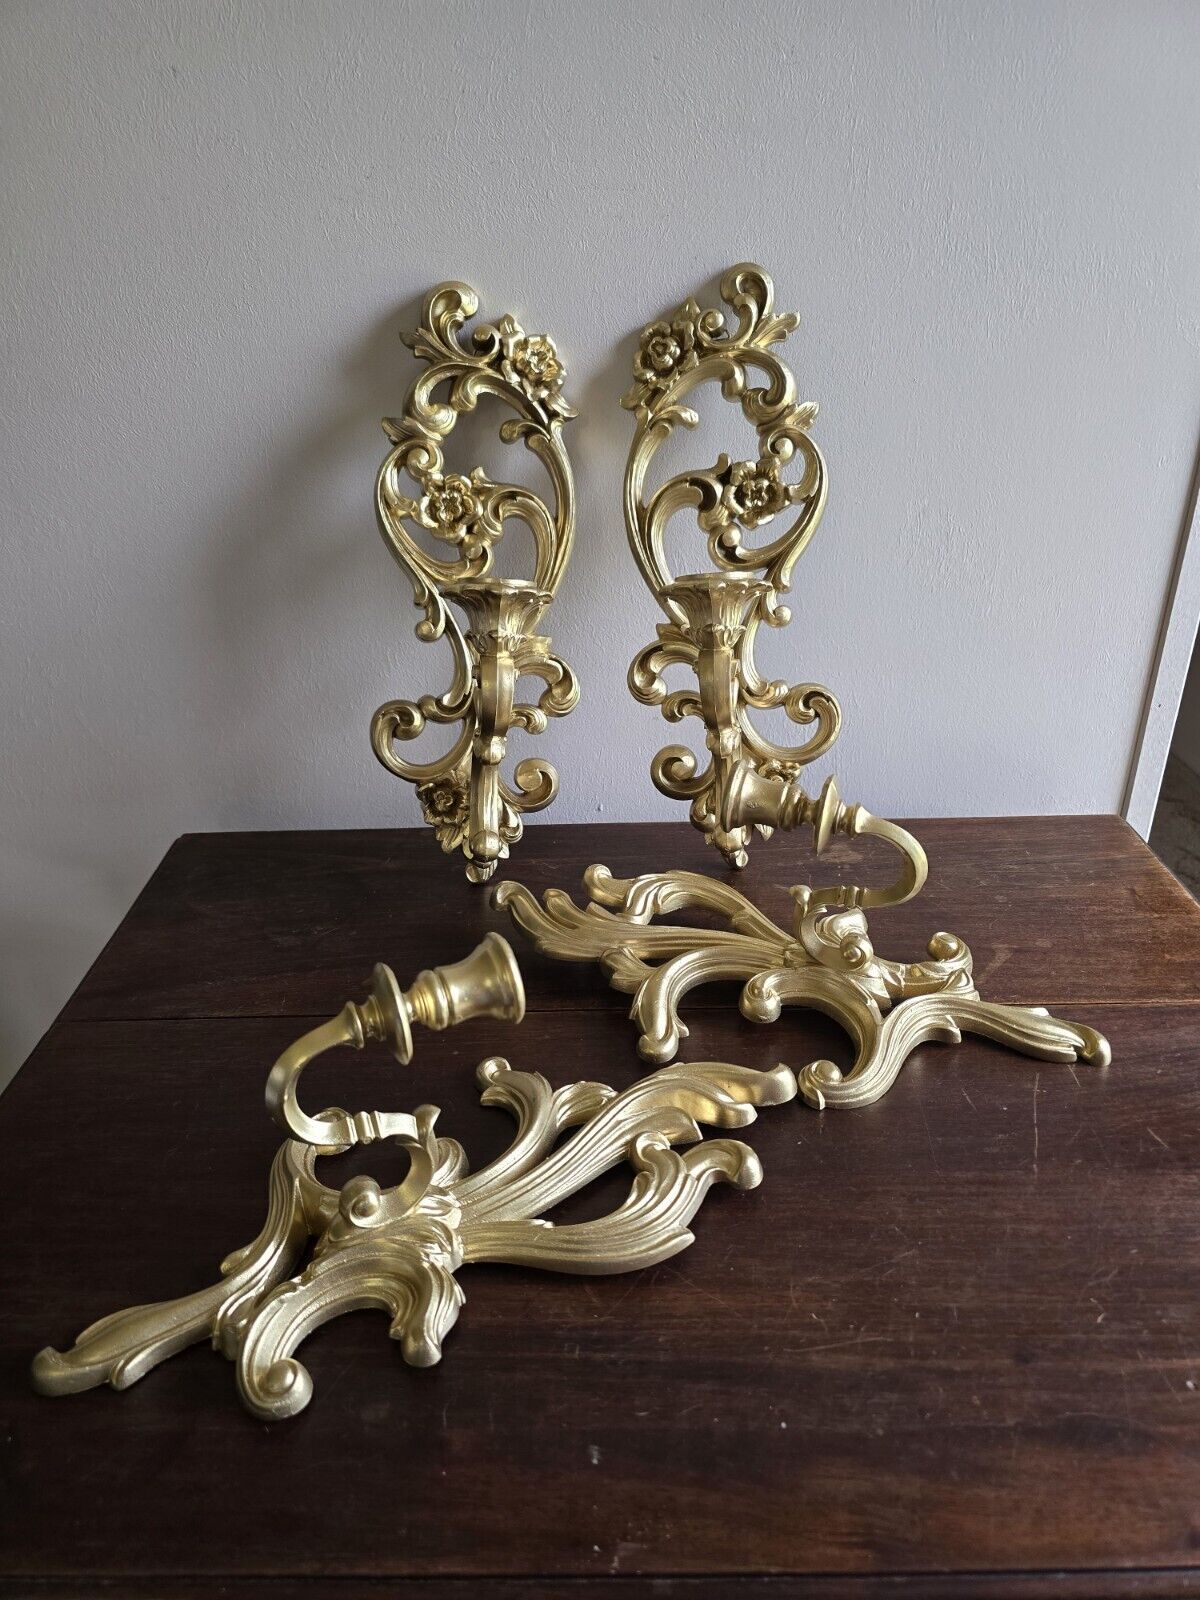 Set of 4 VTG Ornate Gold 1 Arm Wall Candle Sconces 2 Homco & 2 Turner MFG